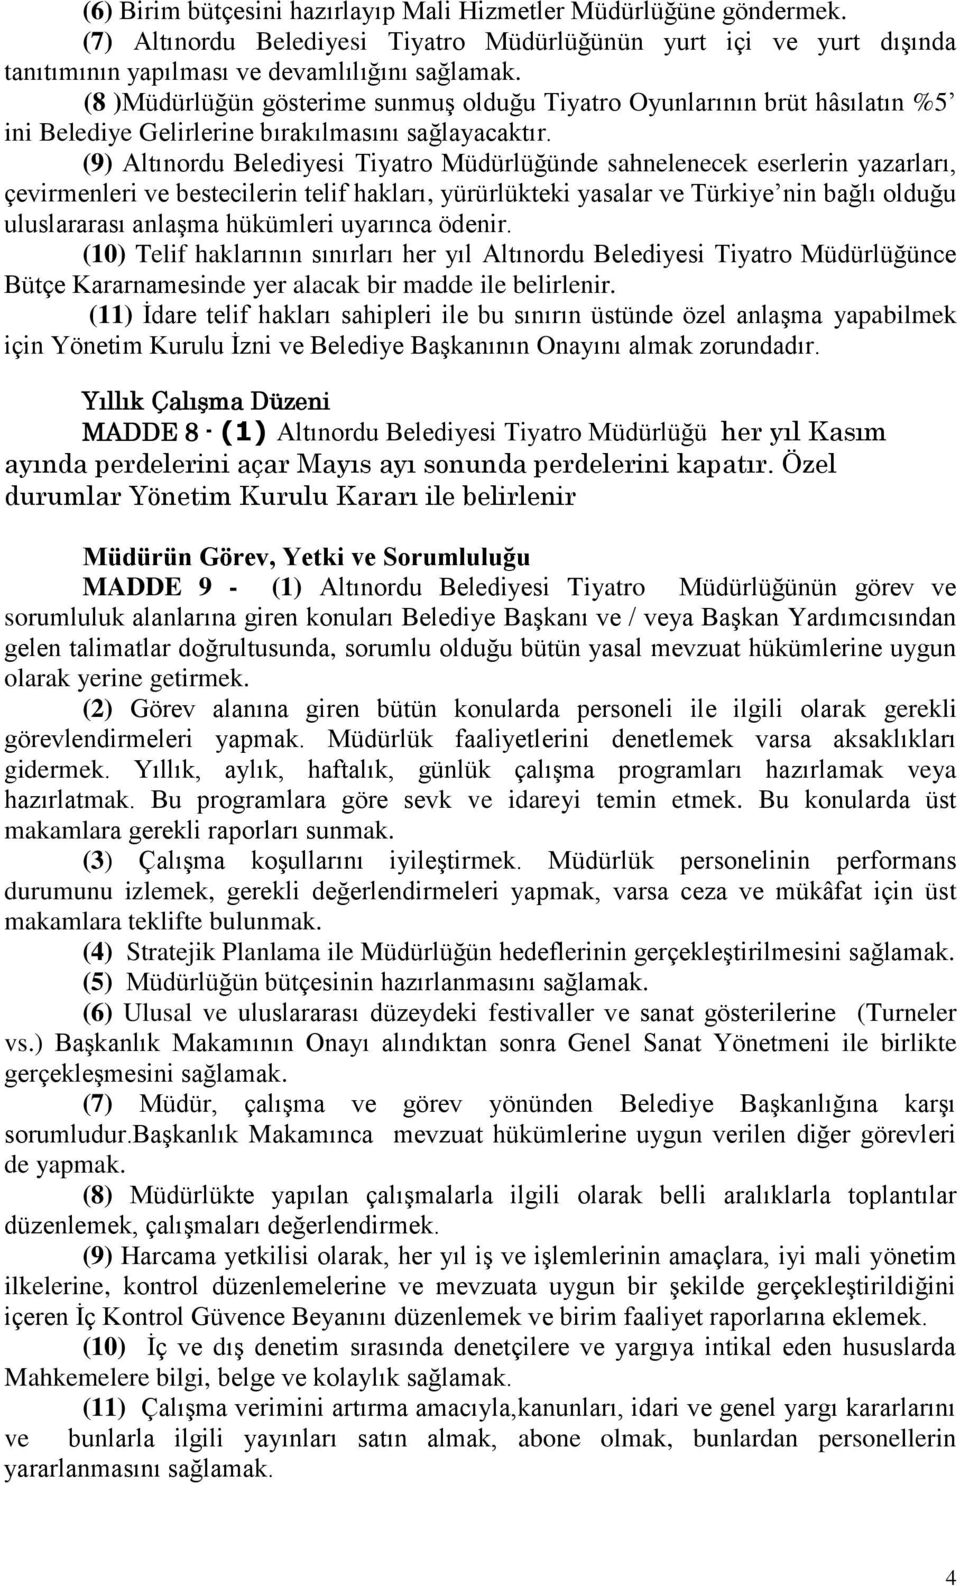 (9) Altınordu Belediyesi Tiyatro Müdürlüğünde sahnelenecek eserlerin yazarları, çevirmenleri ve bestecilerin telif hakları, yürürlükteki yasalar ve Türkiye nin bağlı olduğu uluslararası anlaşma